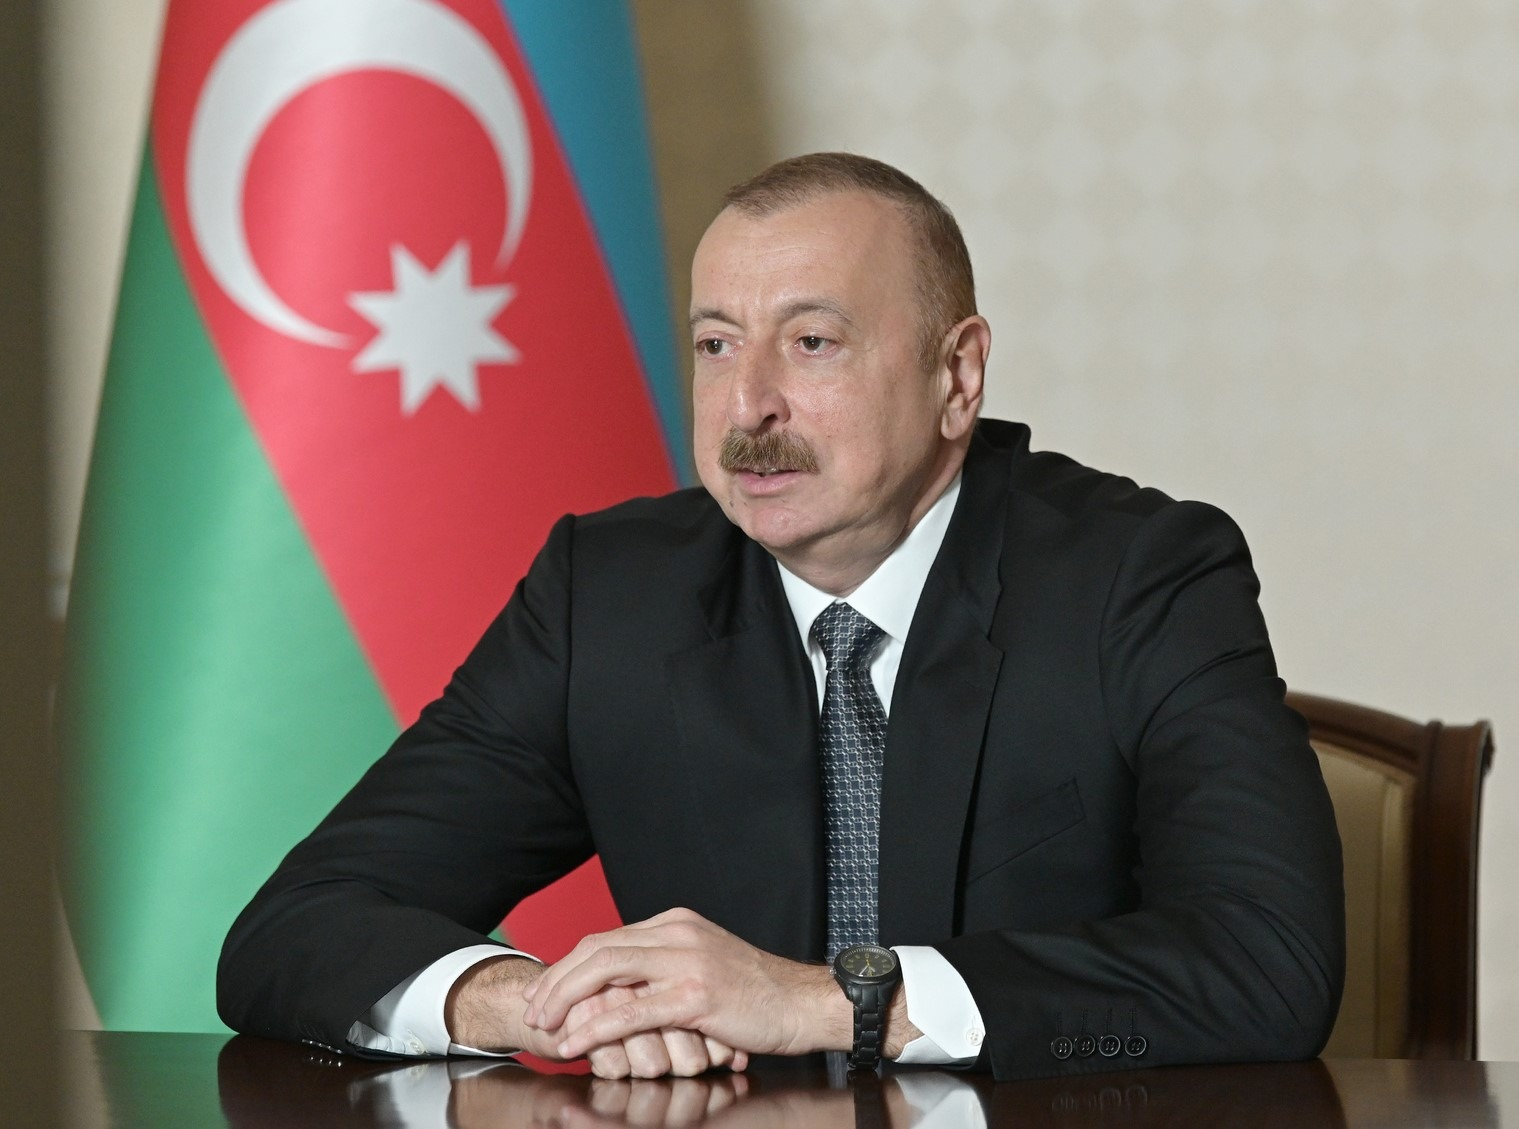 Ильхам Алиев: Освобождены от оккупации 2 села Ходжавенда, 5 сел Джебраила, 2 села Зангилана